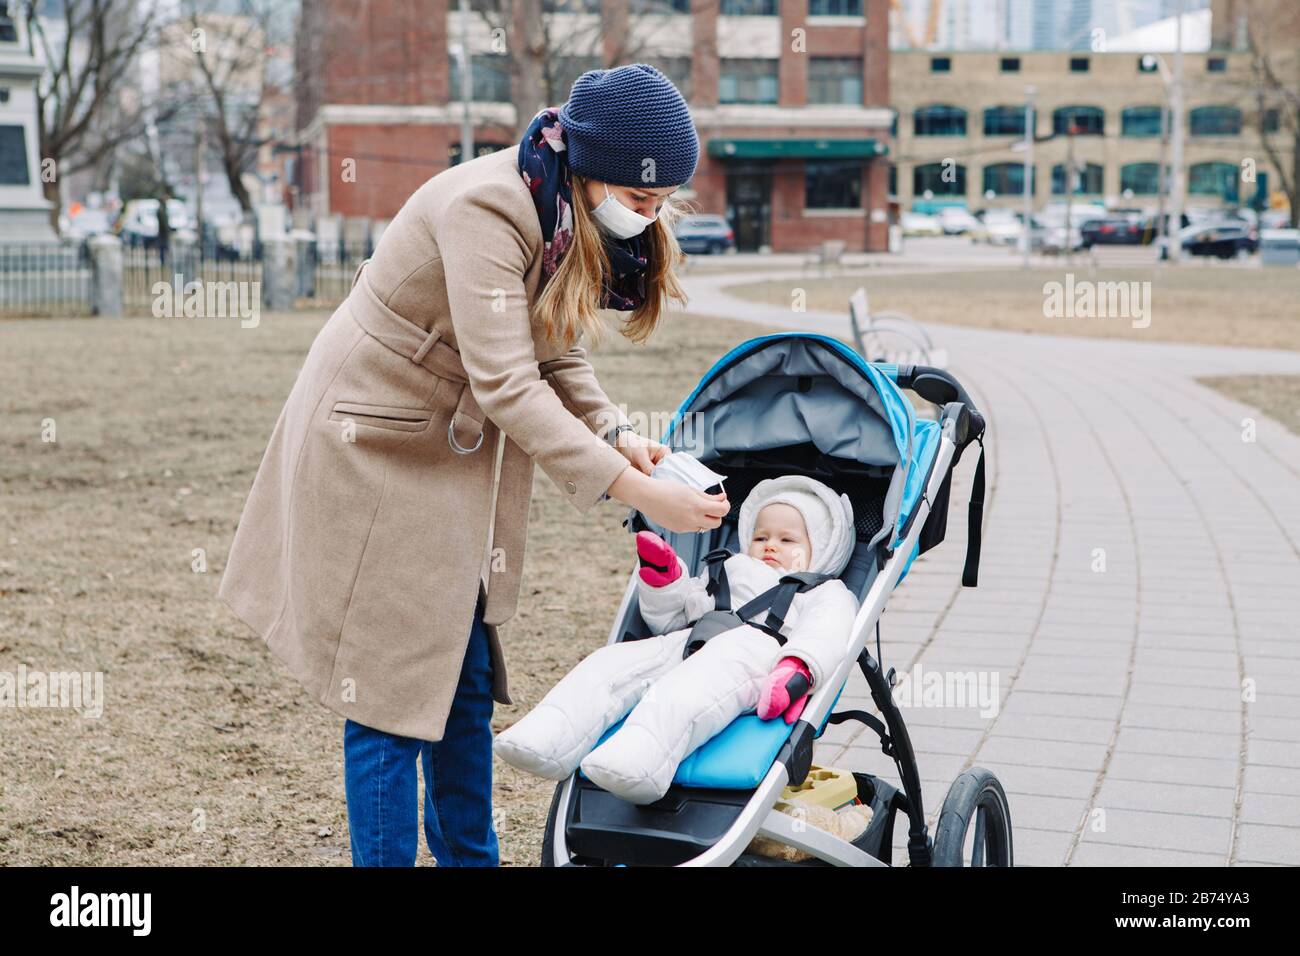 Une jeune mère caucasienne a mis un masque chirurgical sur le bébé extérieur à Toronto. Masque protecteur précaution contre la nouvelle pneumonie atypique chinoise COVID-1 Banque D'Images